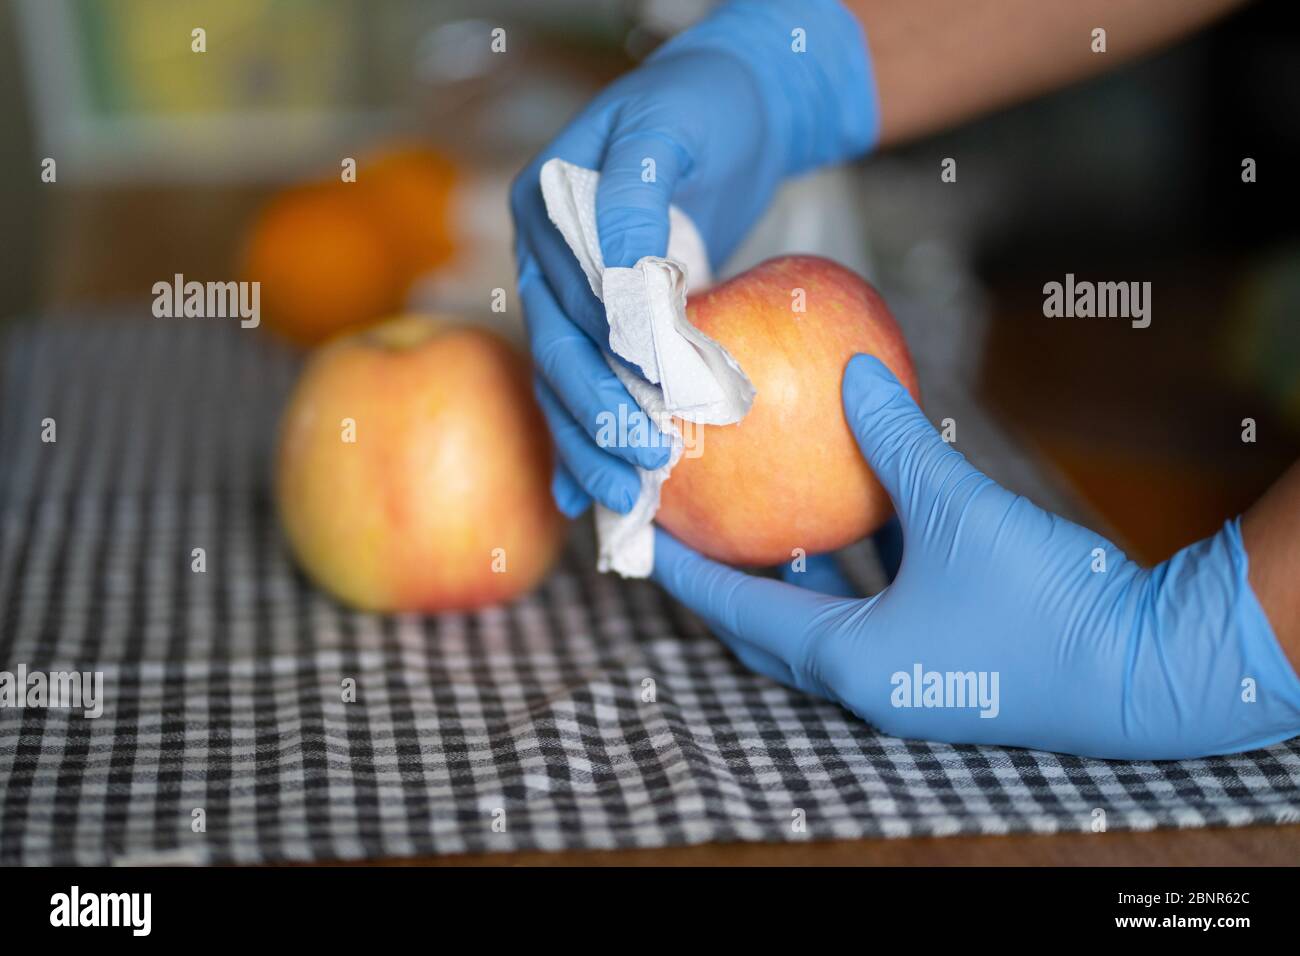 Eine Frau, die Handschuhe trägt, schneidet während der COVID-19 Pandemie 202 einen Apfel mit einem Wischtuch Stockfoto